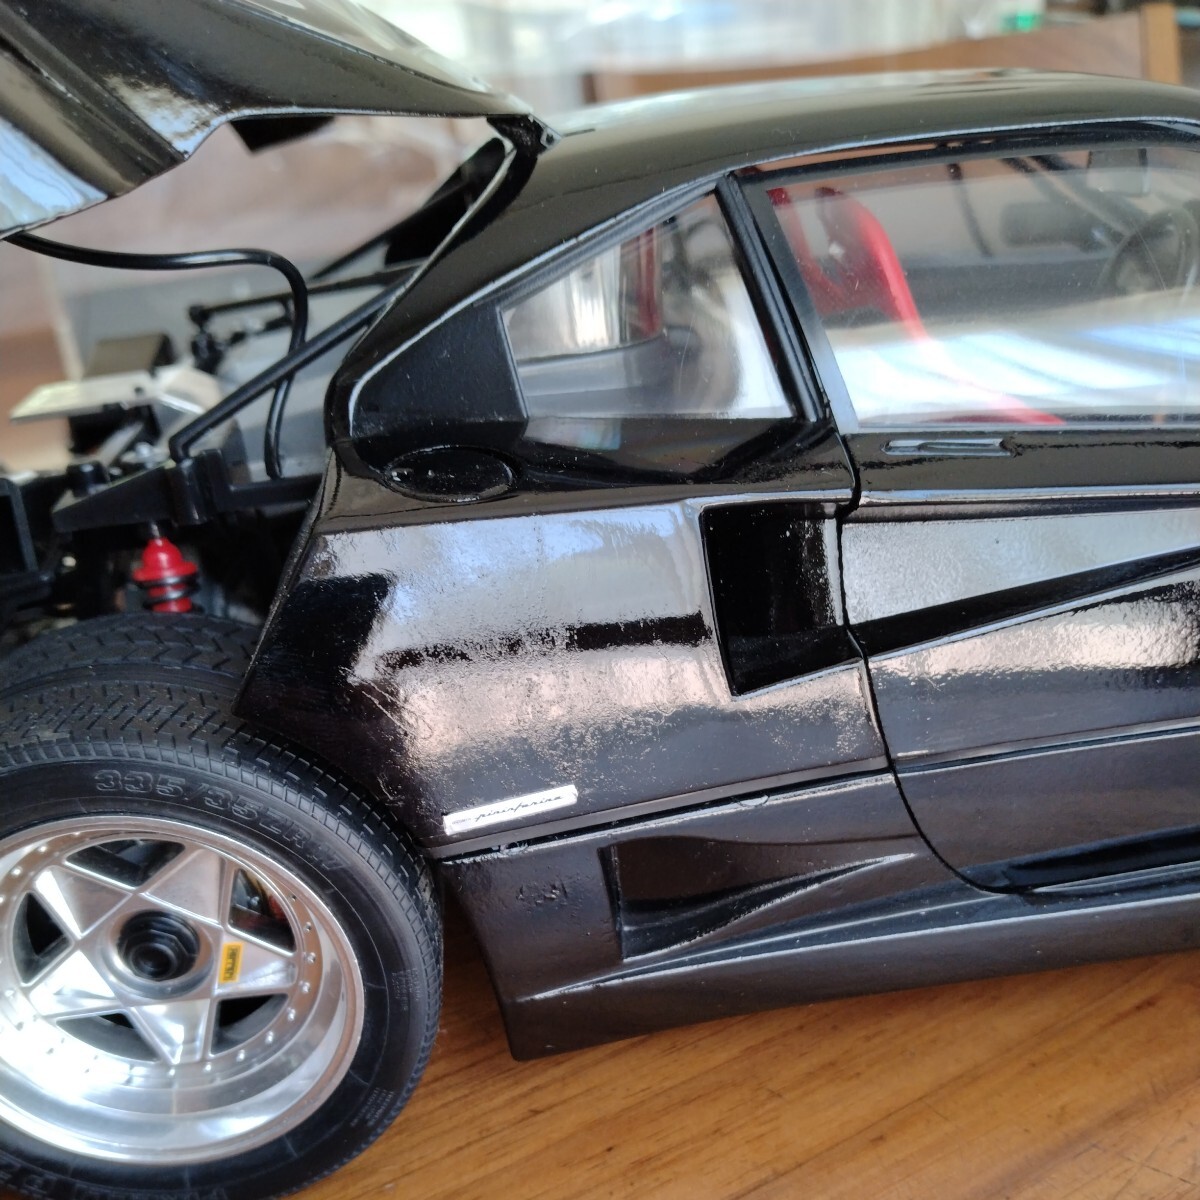 フジミ (京商) FUJIMI 1/12 Ferrari F40 BlackStar 1987 ダイキャストモデル ブラック 完成品 (素人作製) フェラーリ ブラックスター_一番塗装状態の悪い箇所